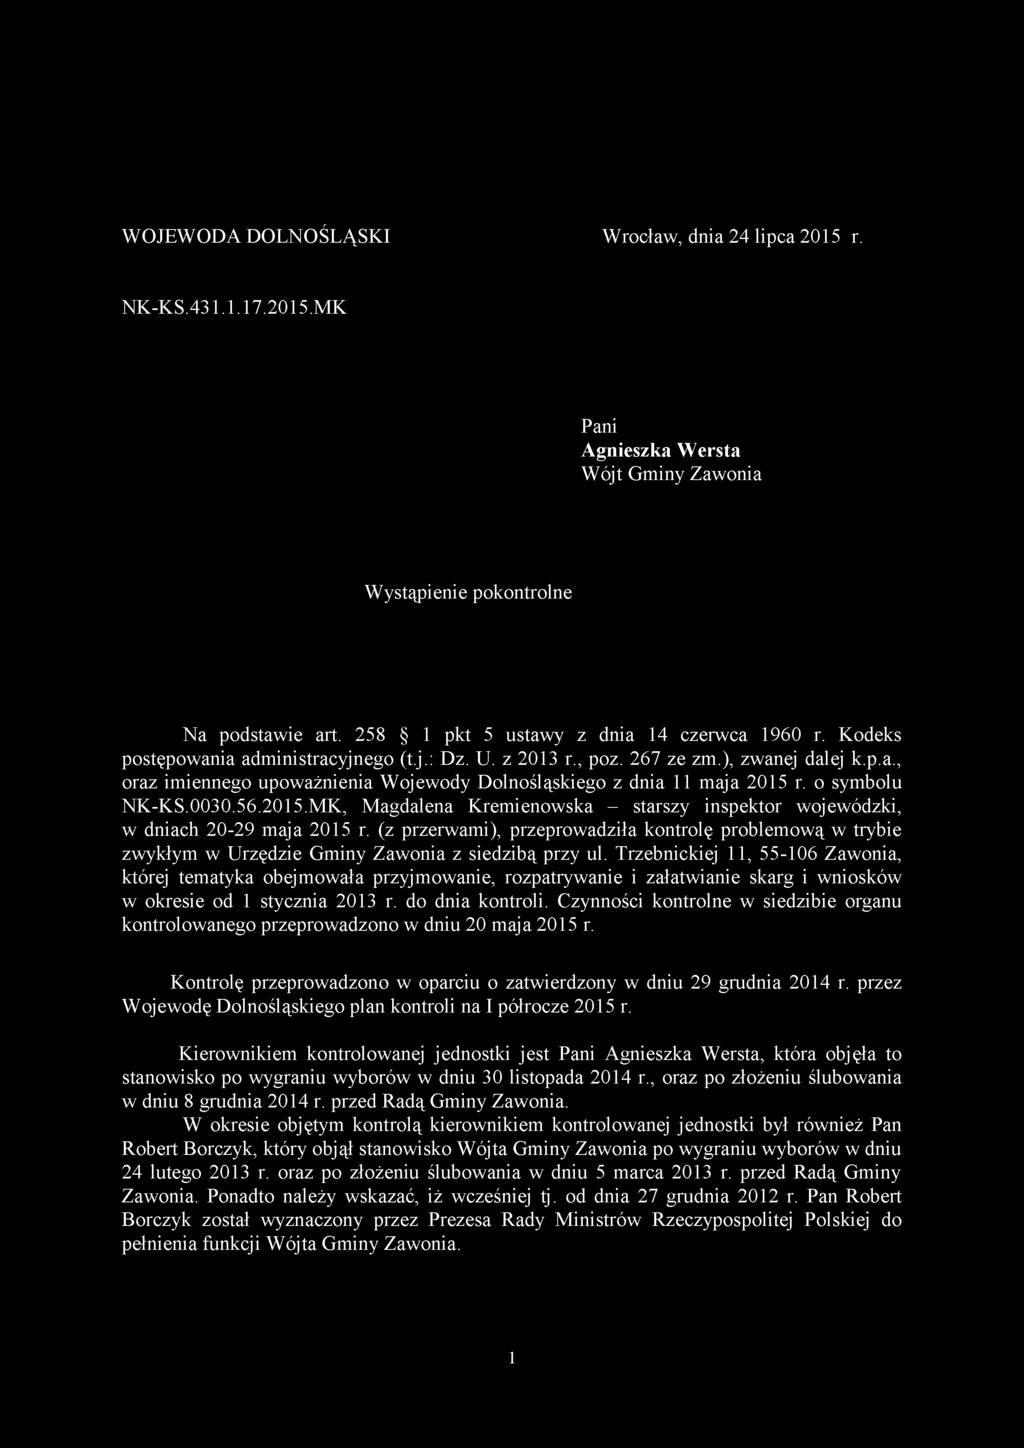 Trzebnickiej 11, 55-106 Zawonia, której tematyka obejmowała przyjmowanie, rozpatrywanie i załatwianie skarg i wniosków w okresie od 1 stycznia 2013 r. do dnia kontroli.